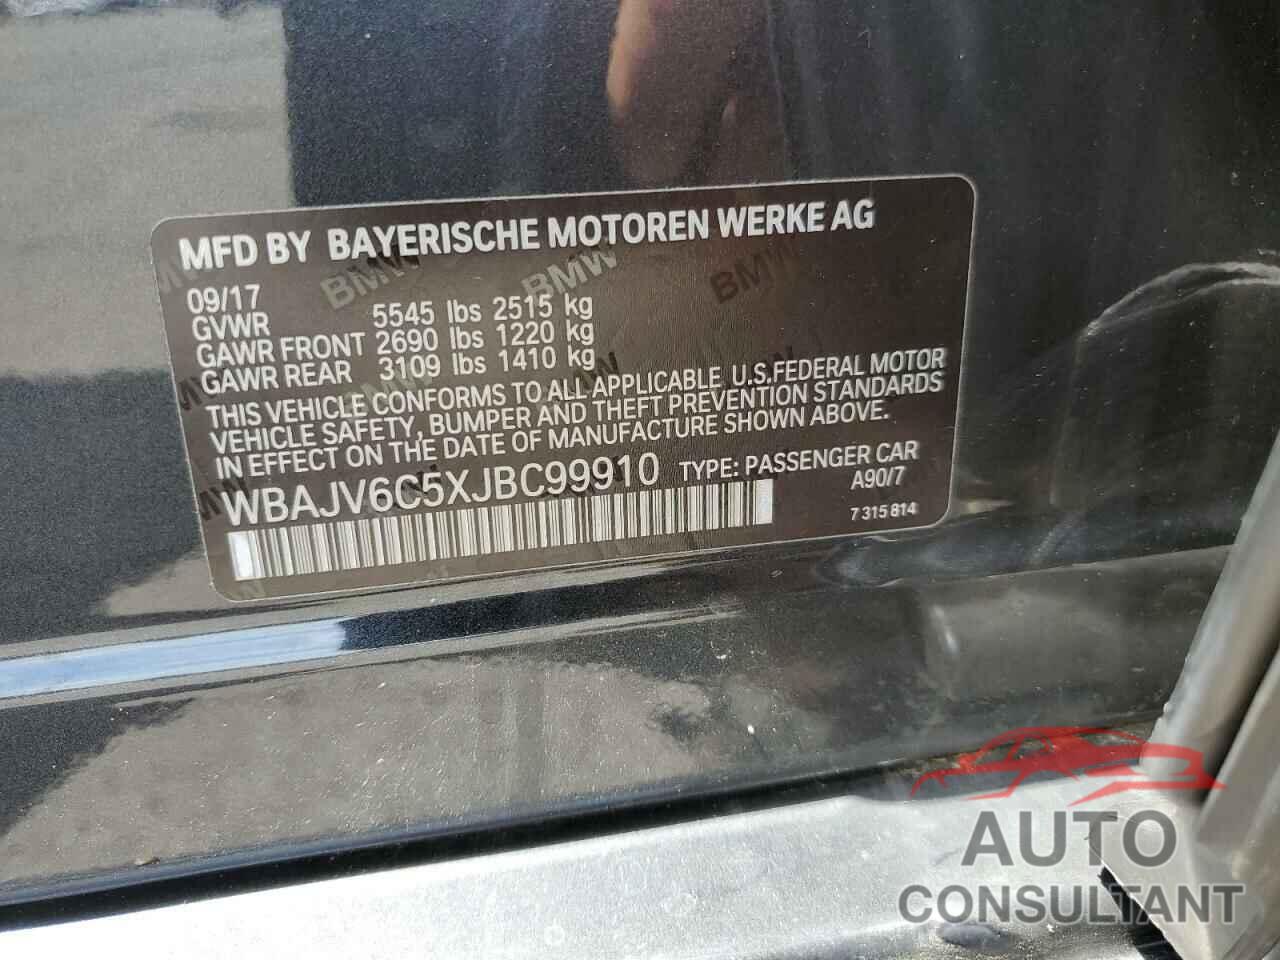 BMW 6 SERIES 2018 - WBAJV6C5XJBC99910